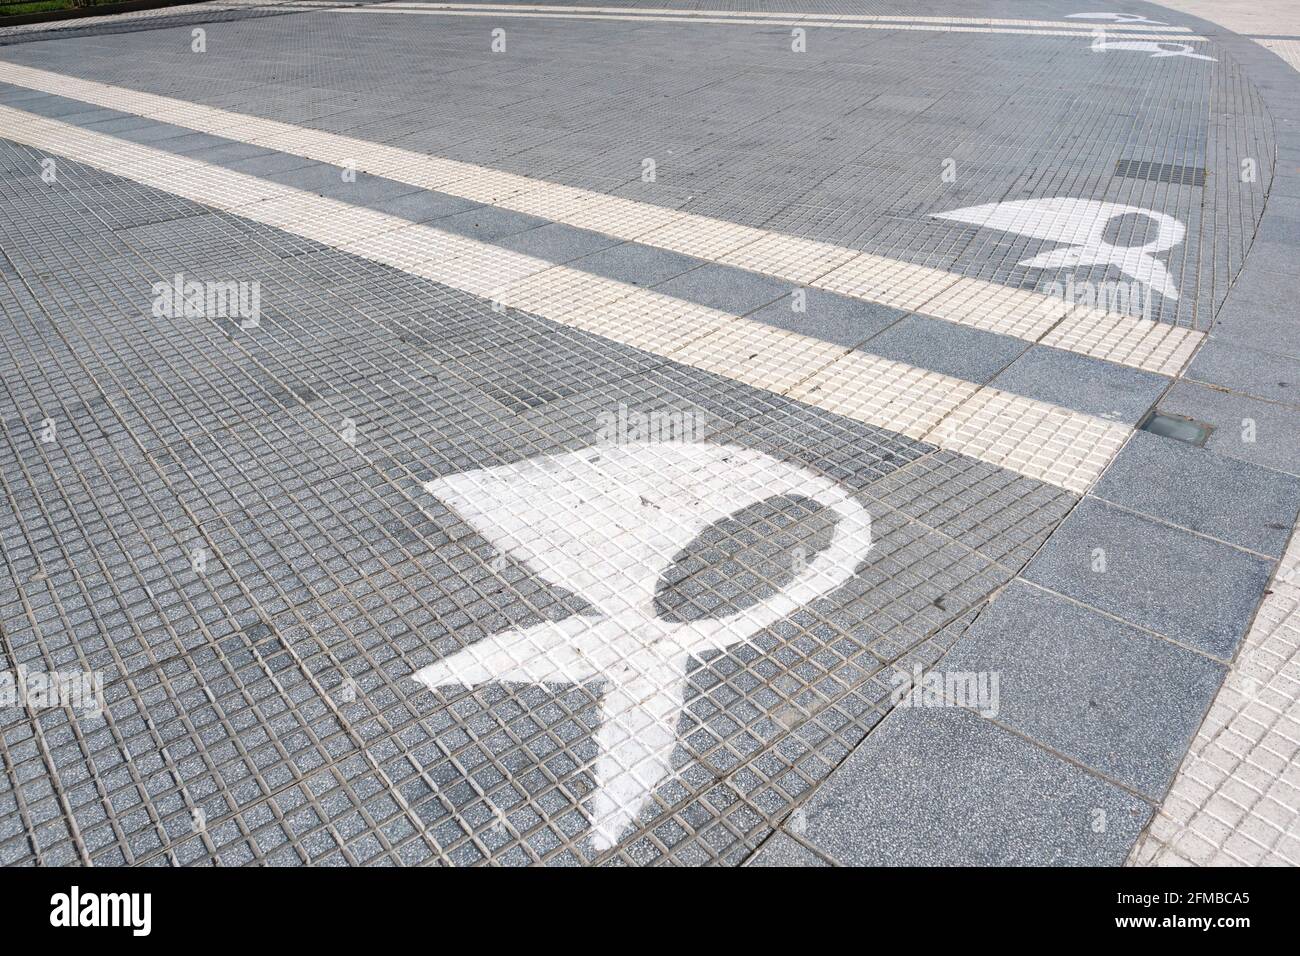 Buenos Aires, Argentina; 24 gennaio 2021: Sciarpe bianche, simbolo delle madri di Plaza de Mayo, dipinte sul terreno di questa piazza. Foto Stock